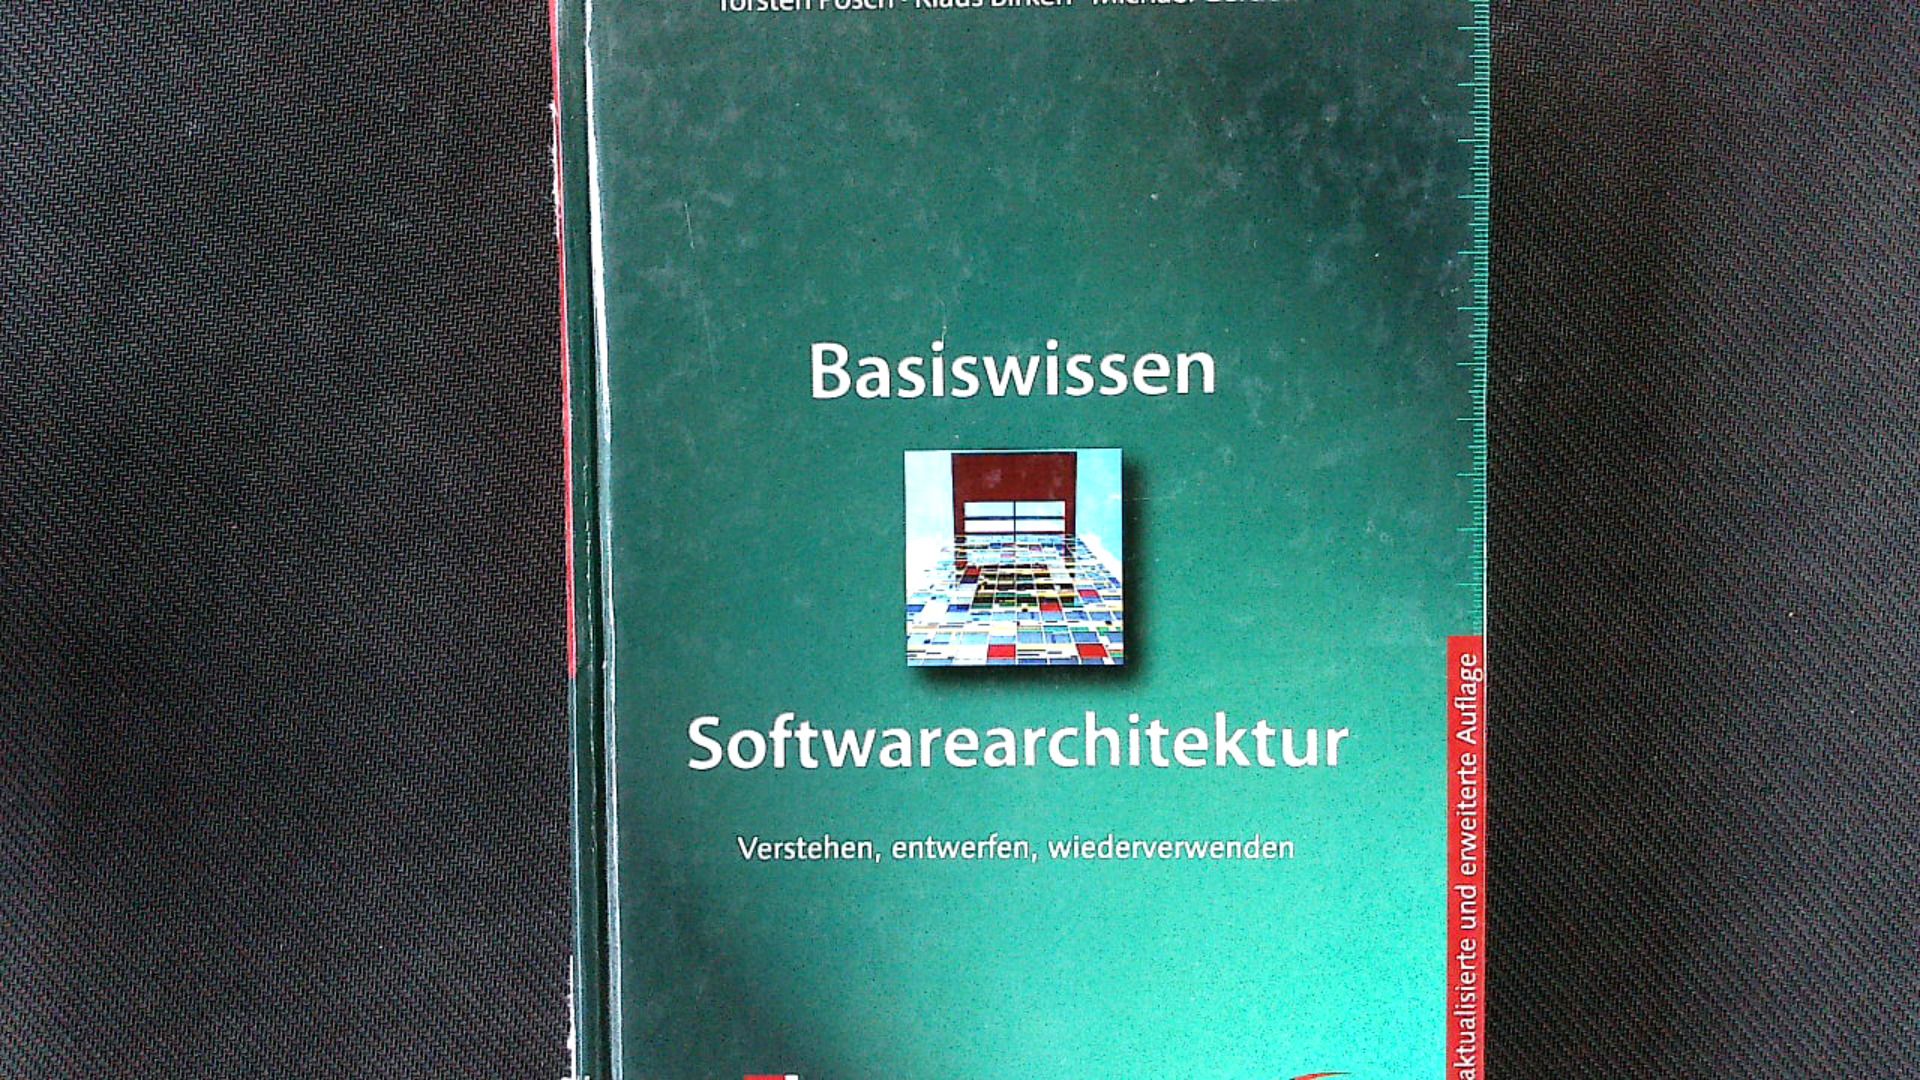 Basiswissen Softwarearchitektur: Verstehen, entwerfen, wiederverwenden. - Posch, Torsten, Klaus Birken  und Michael Gerdom